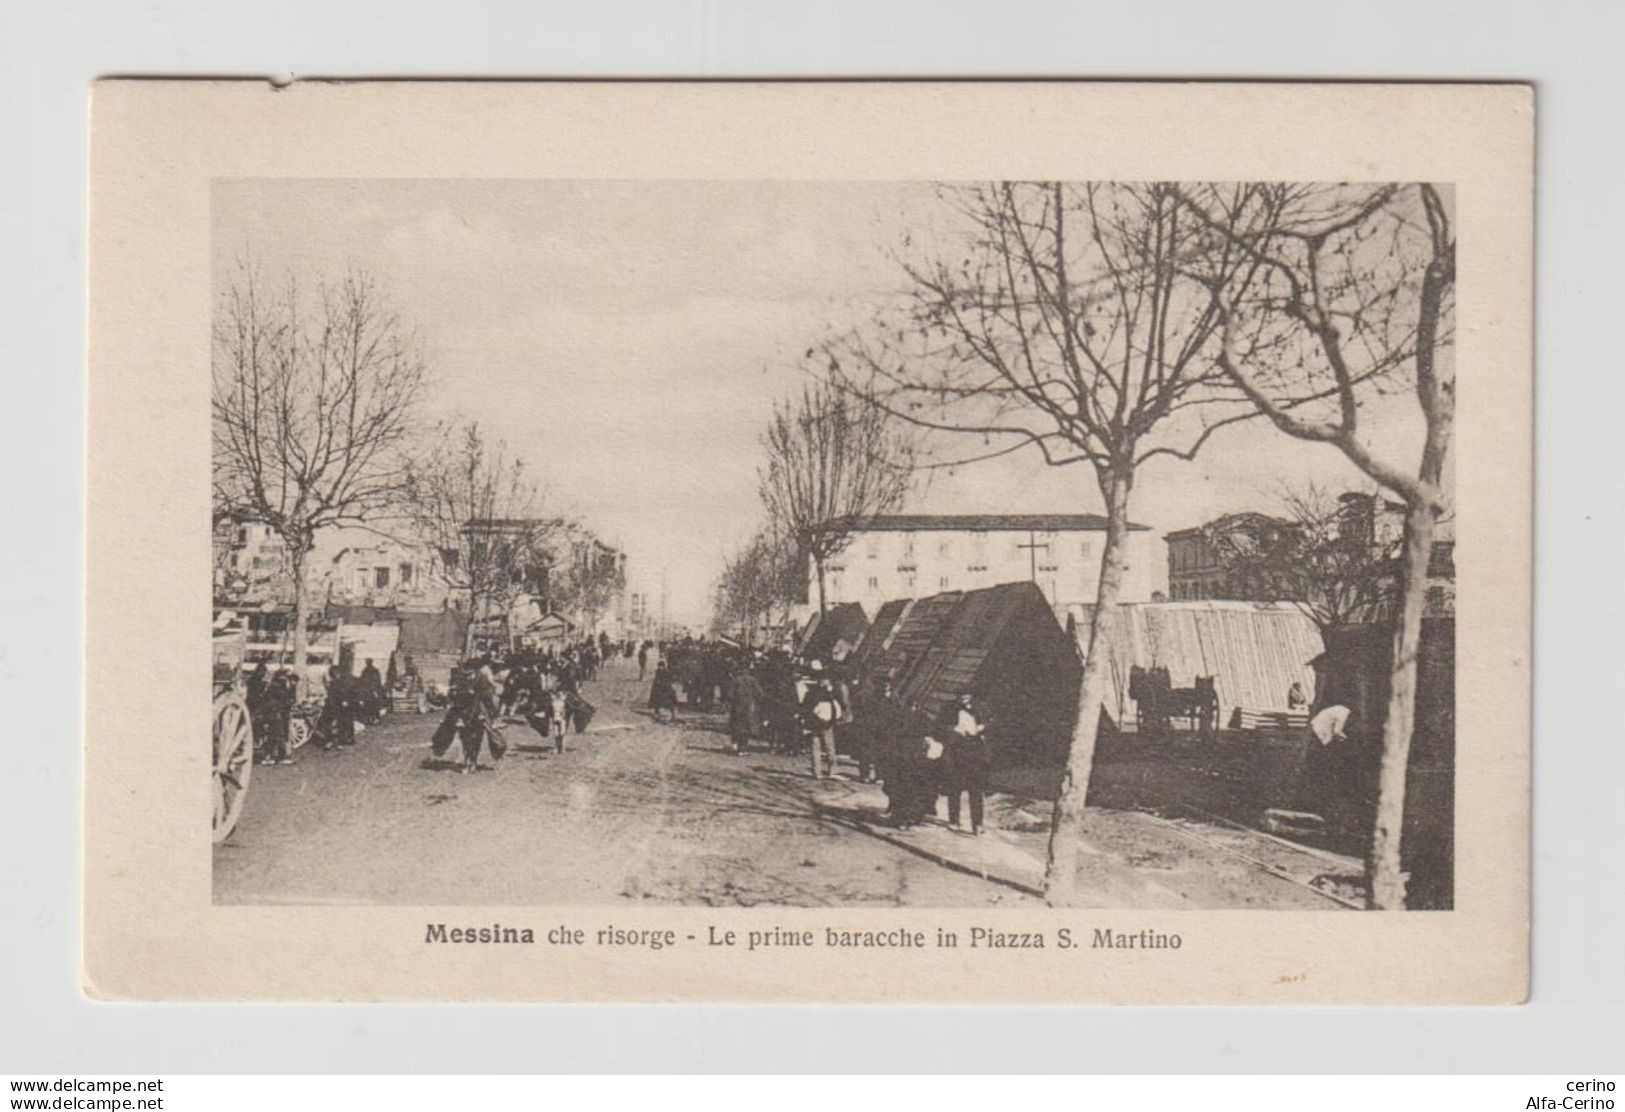 MESSINA  CHE  RISORGE:  LE  PRIME  BARACCHE  IN  PIAZZA  S. MARTINO  DOPO  IL  TERREMOTO  DEL  1908  -  FOTO  -  FP - Catastrophes